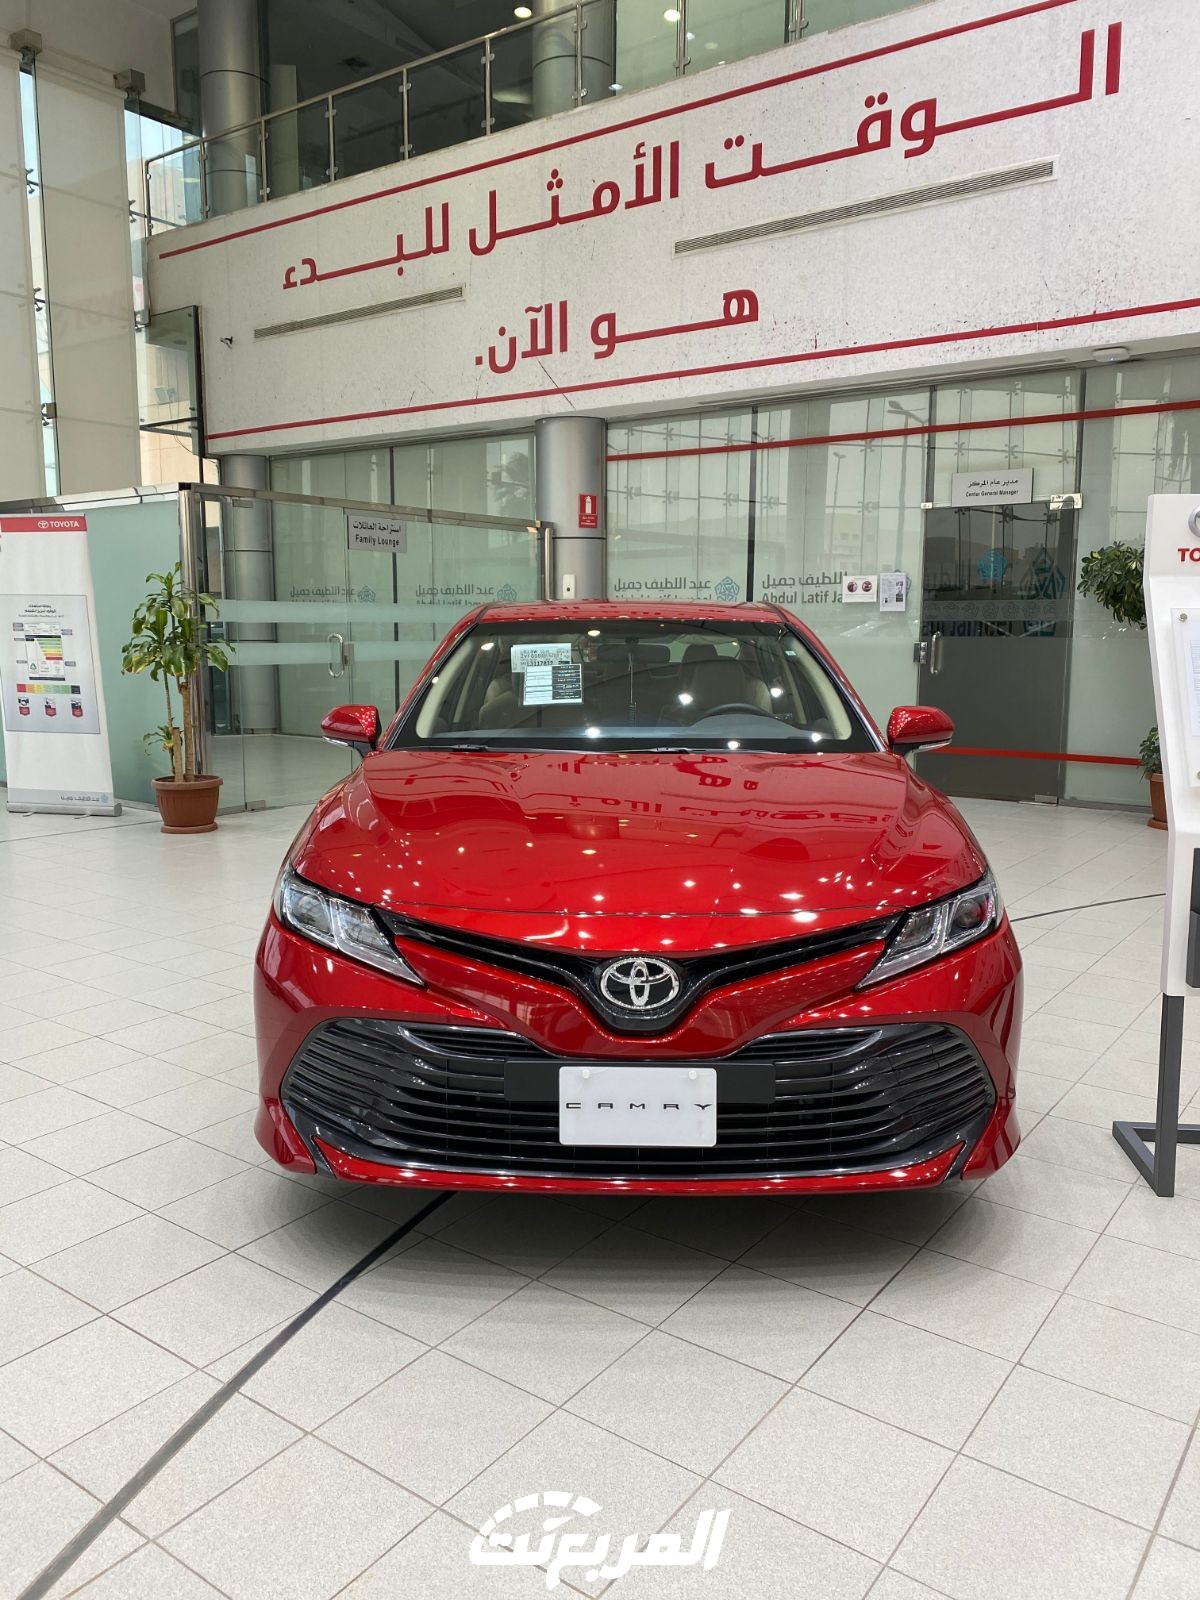 "بالأرقام" أعلى 15 سيارة مبيعاً في السعودية لعام 2020 3